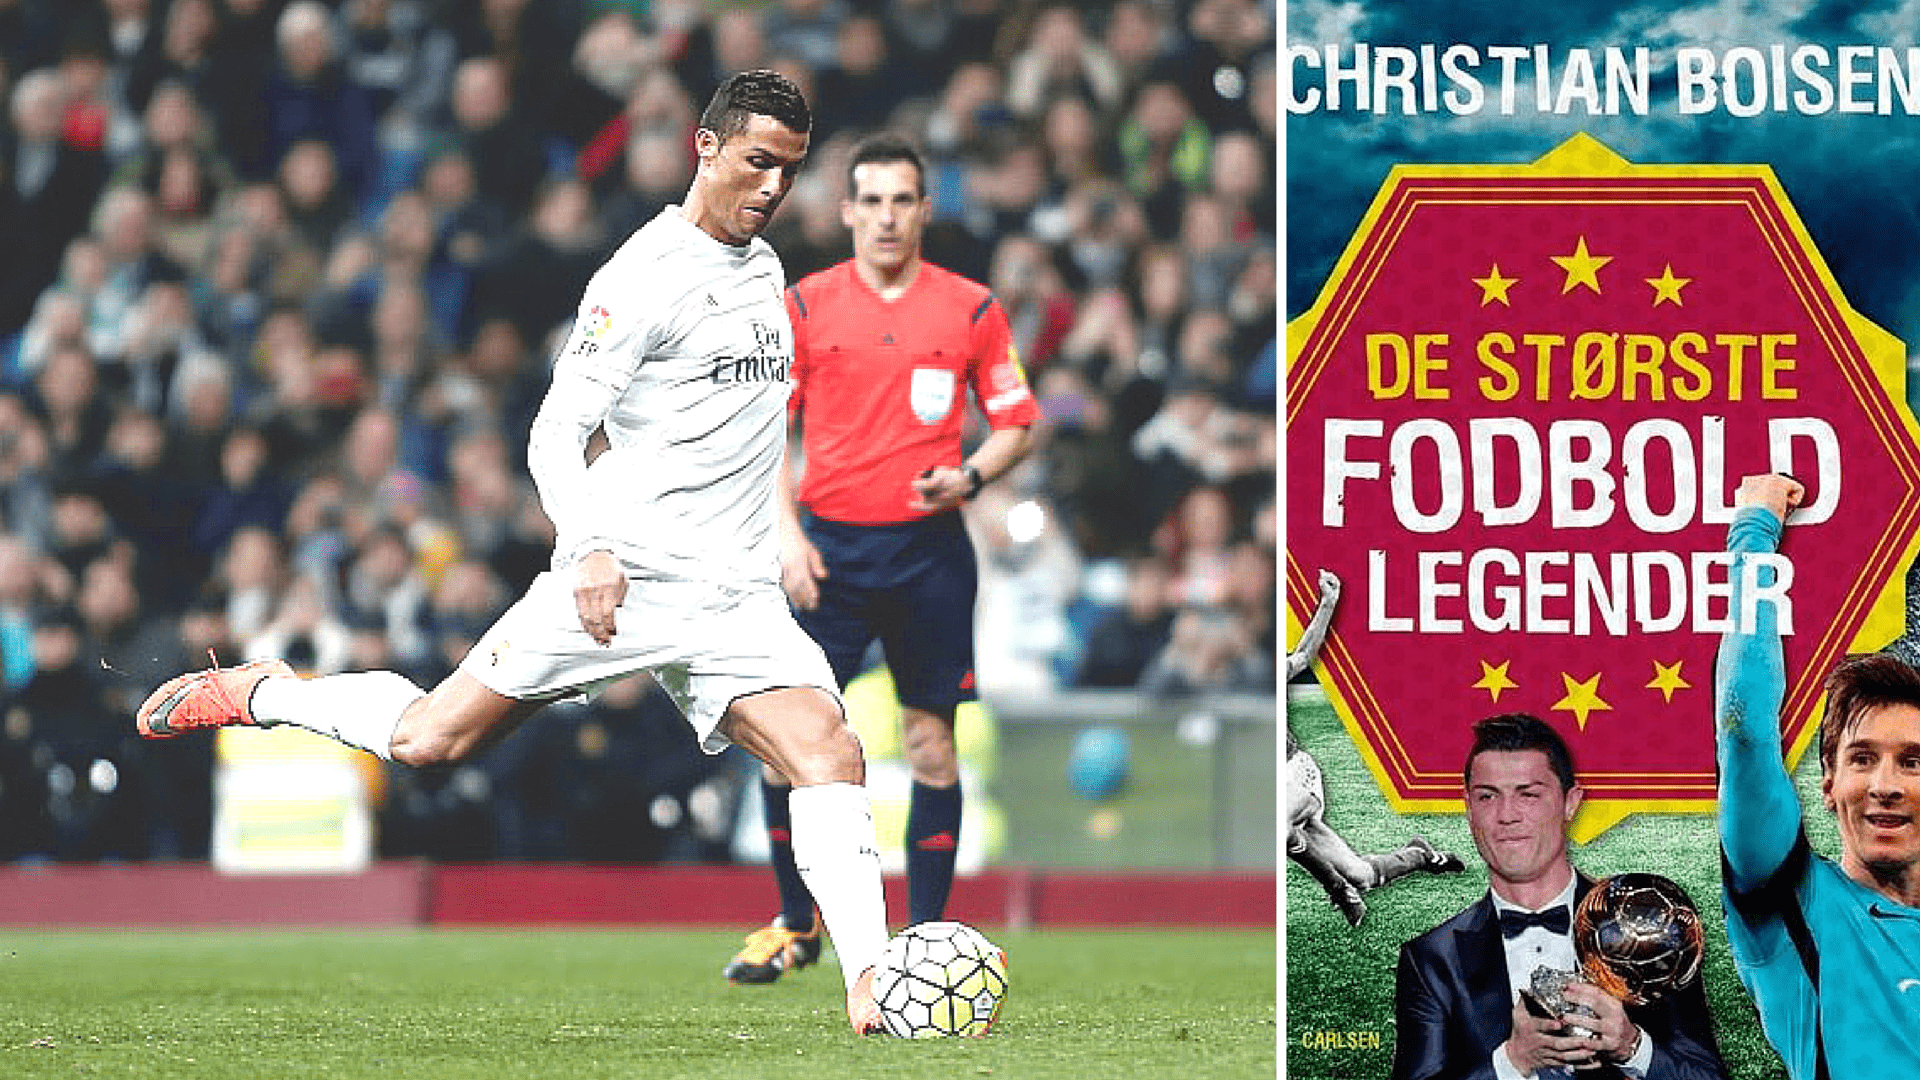 De største fodboldlegender: Cristiano Ronaldo